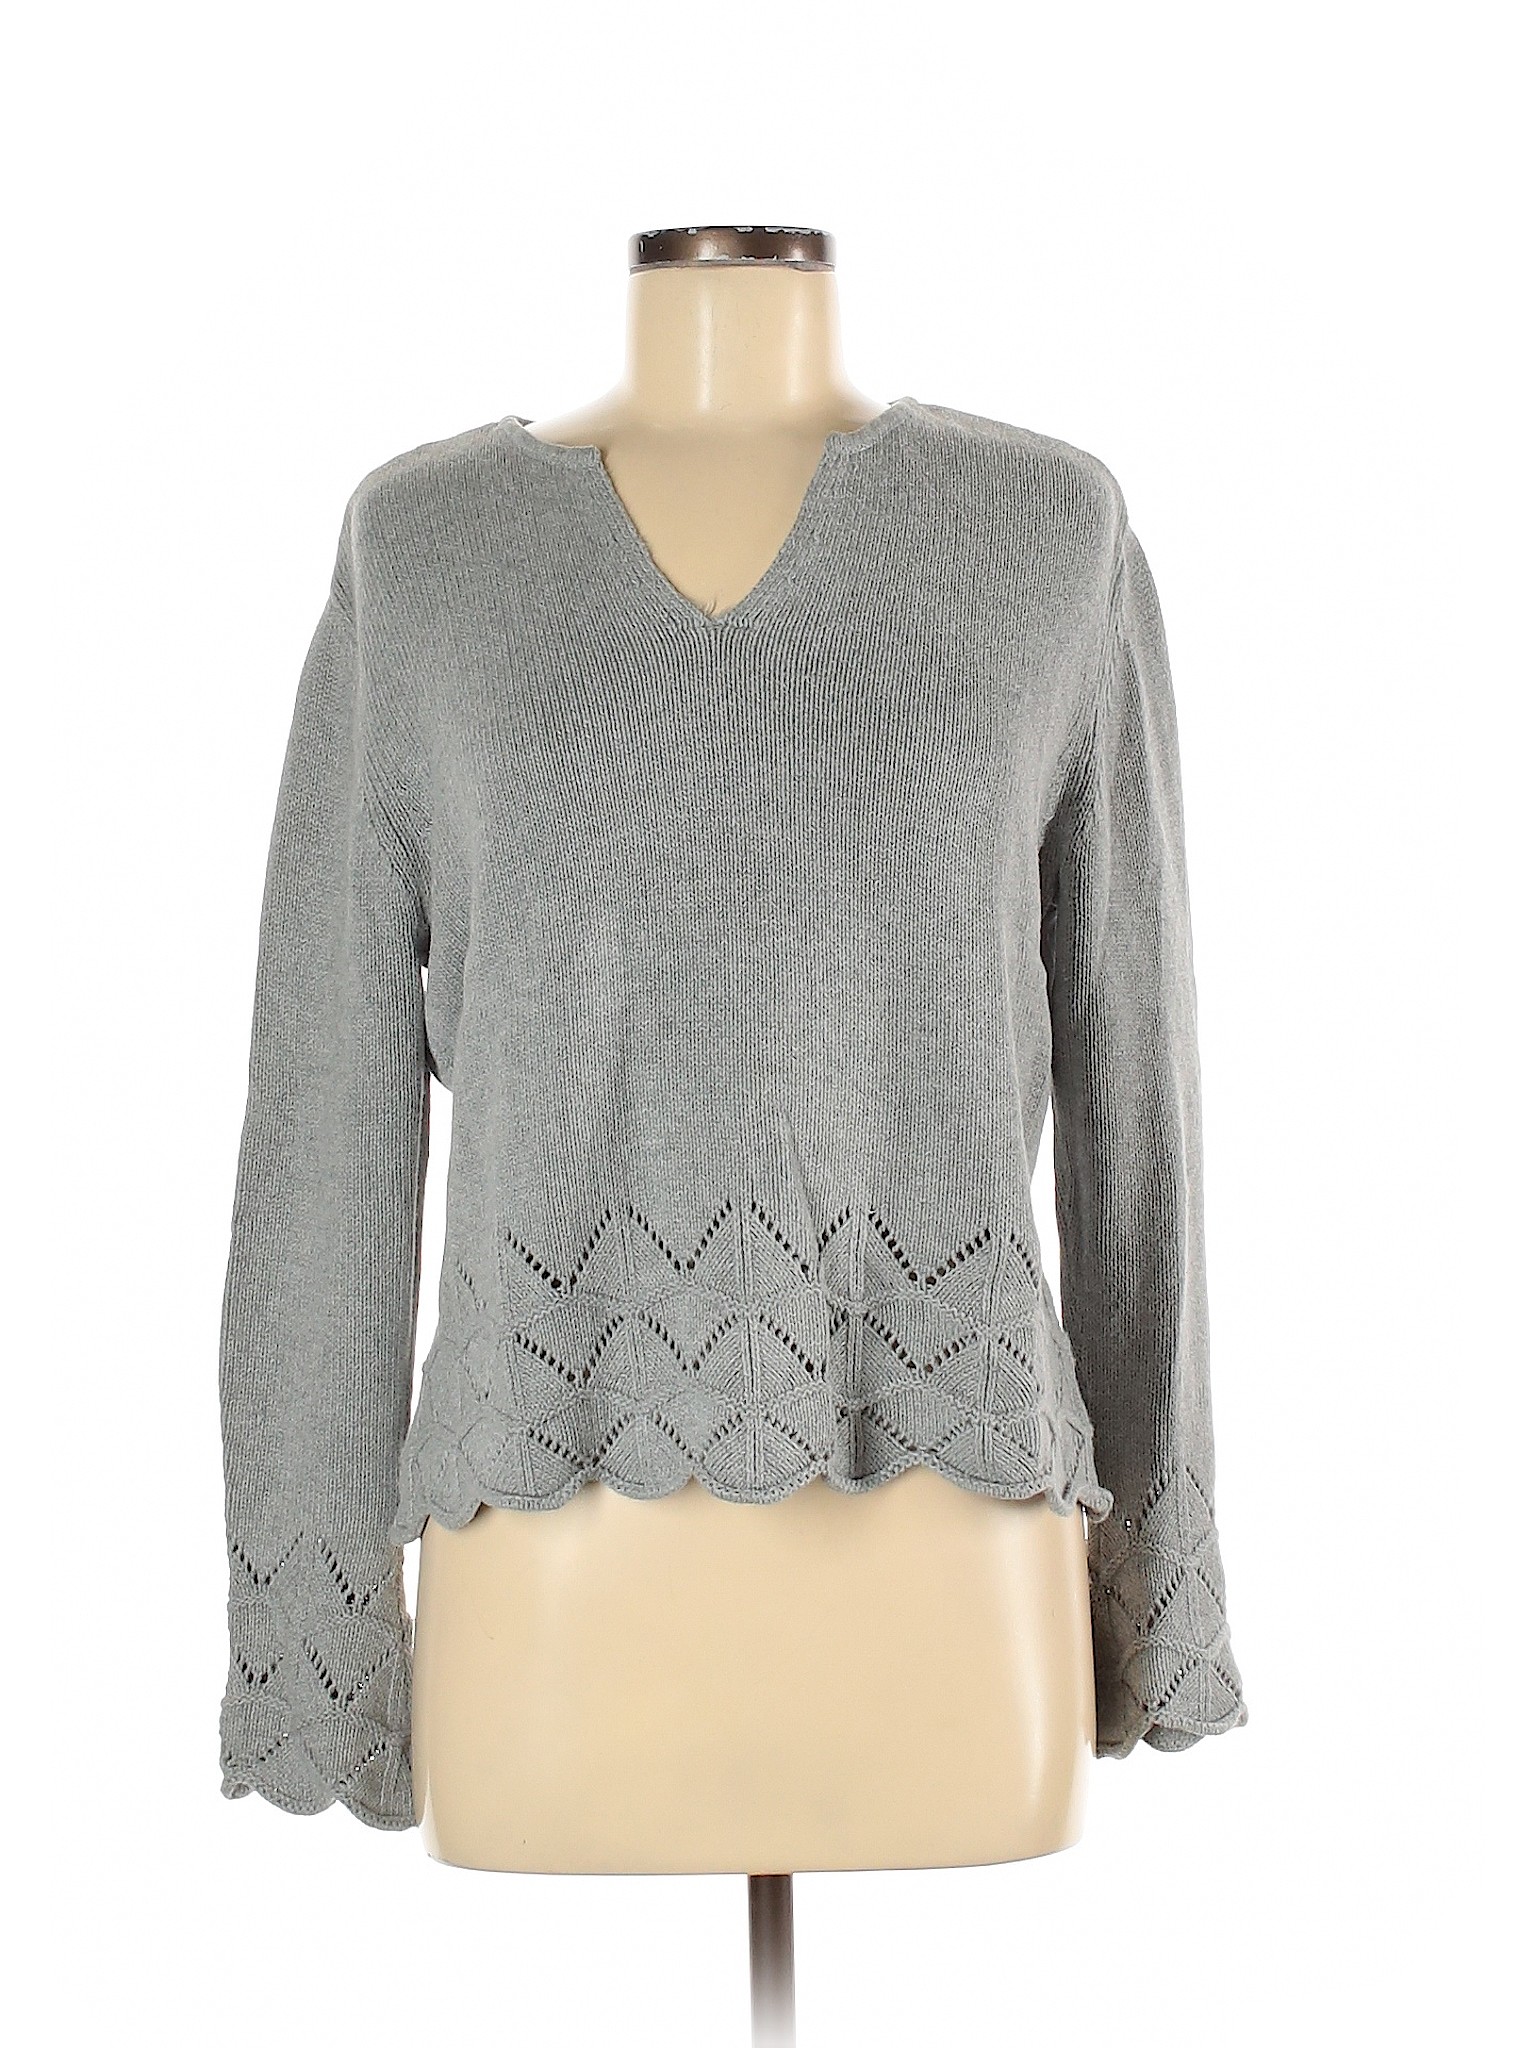 J.jill Women Gray Pullover Sweater M | eBay